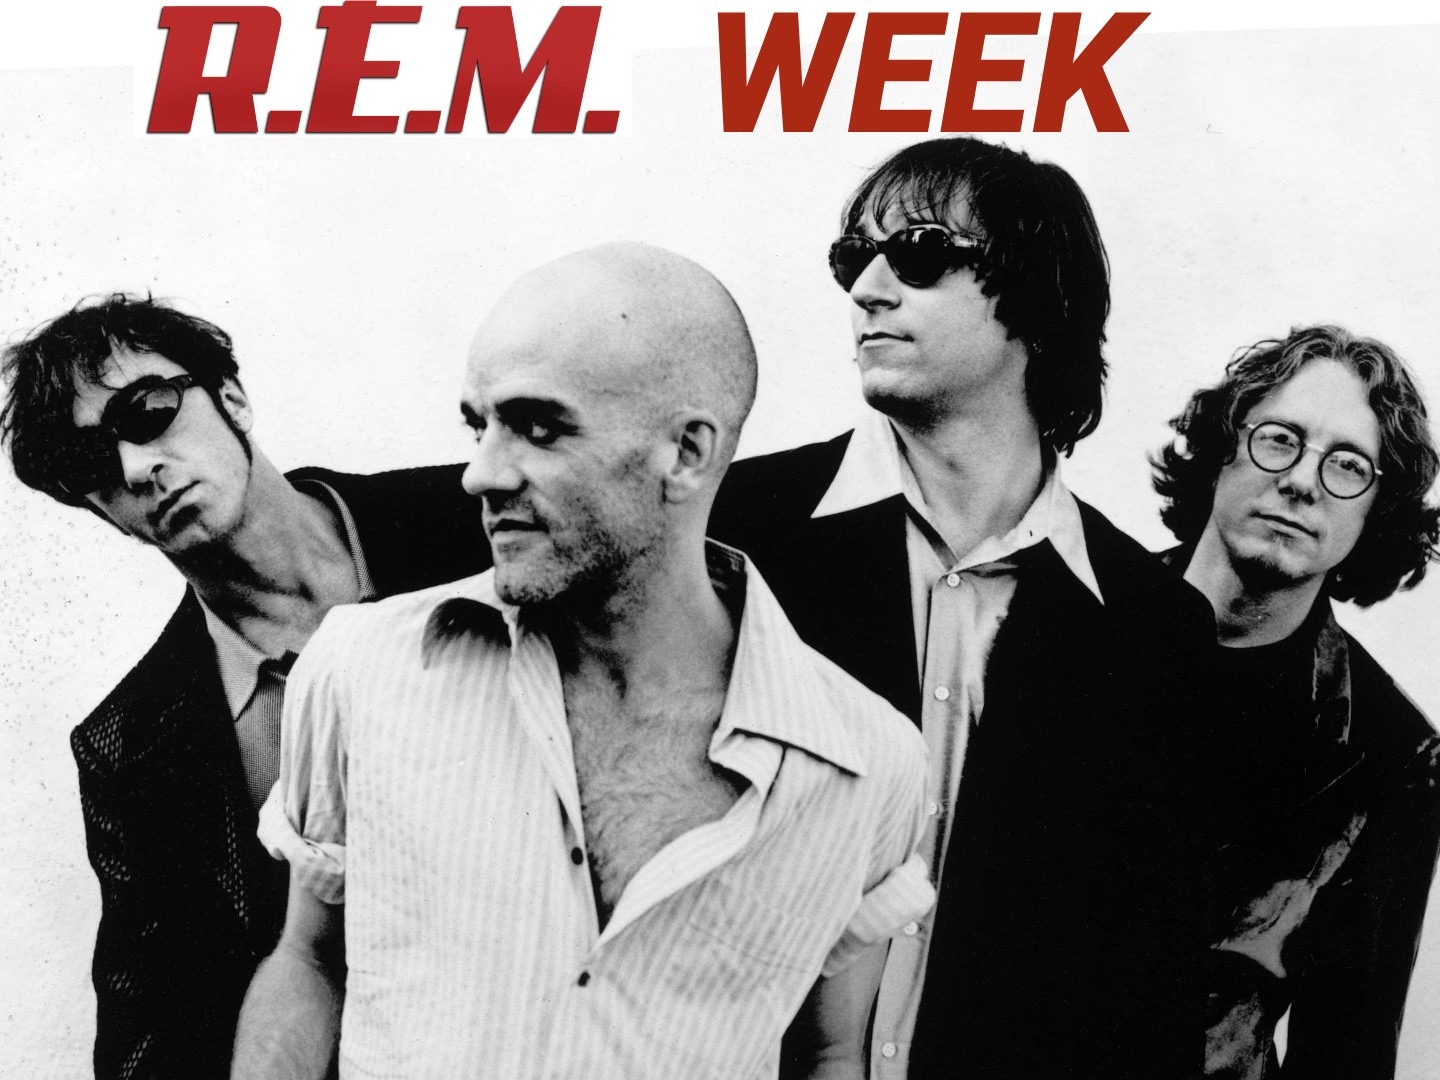 GIITTV NEWS: Announcing R.E.M. week